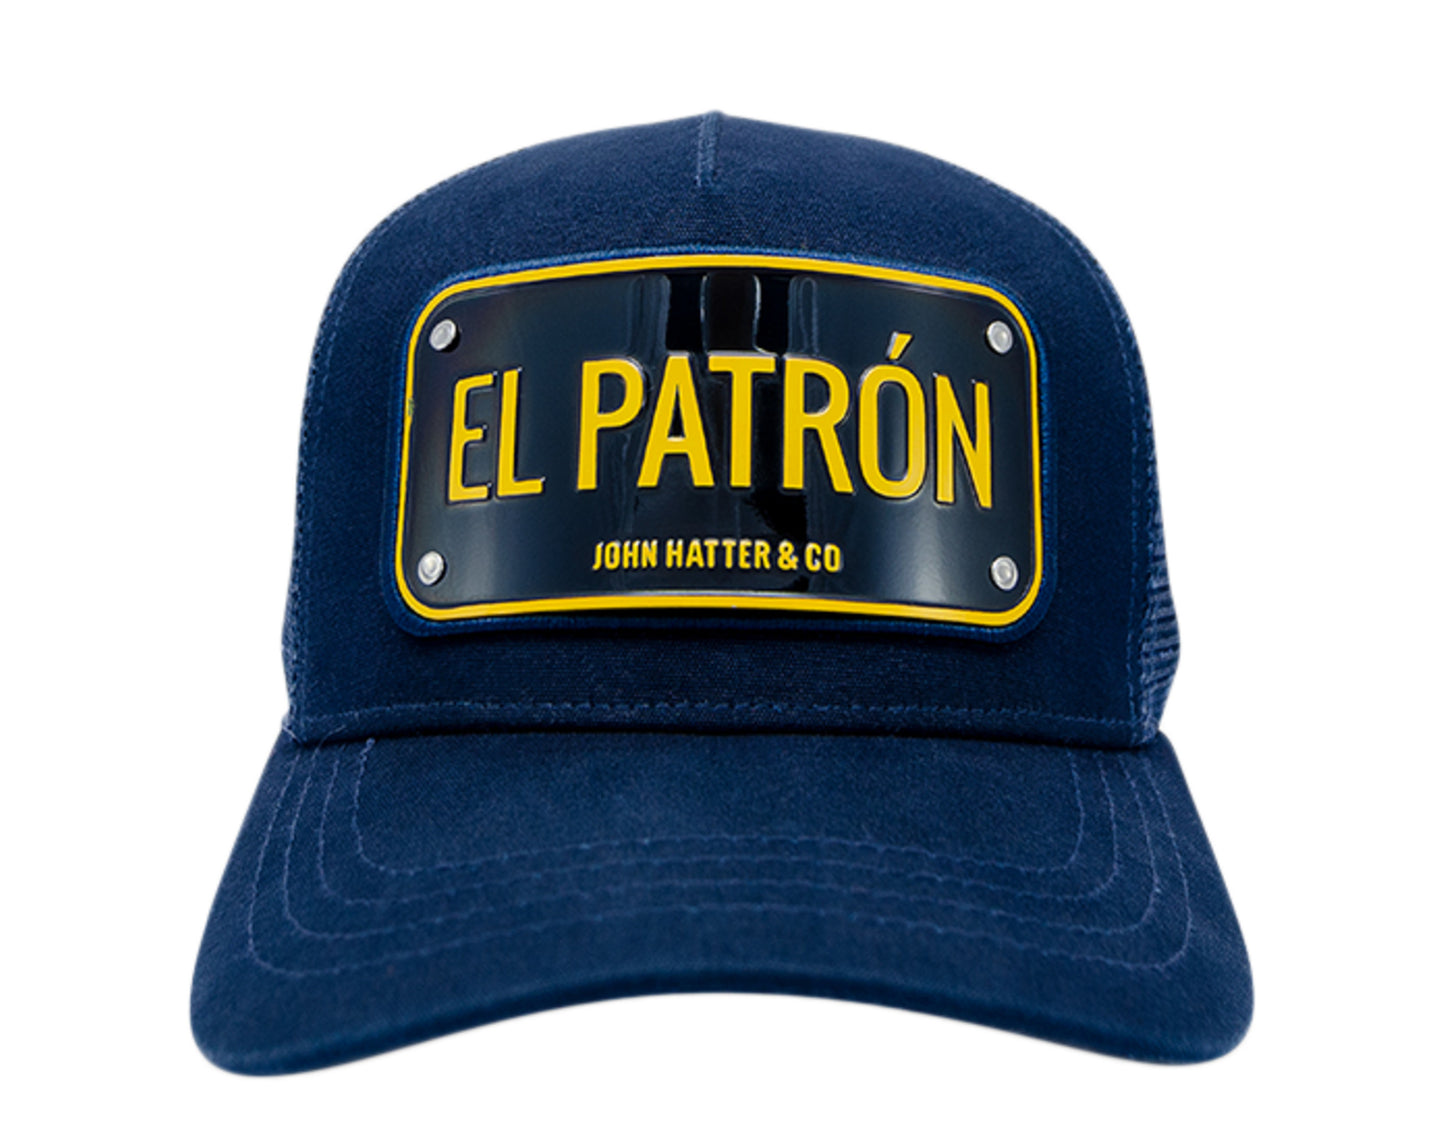 John Hatter & Co El Patron Trucker Hat